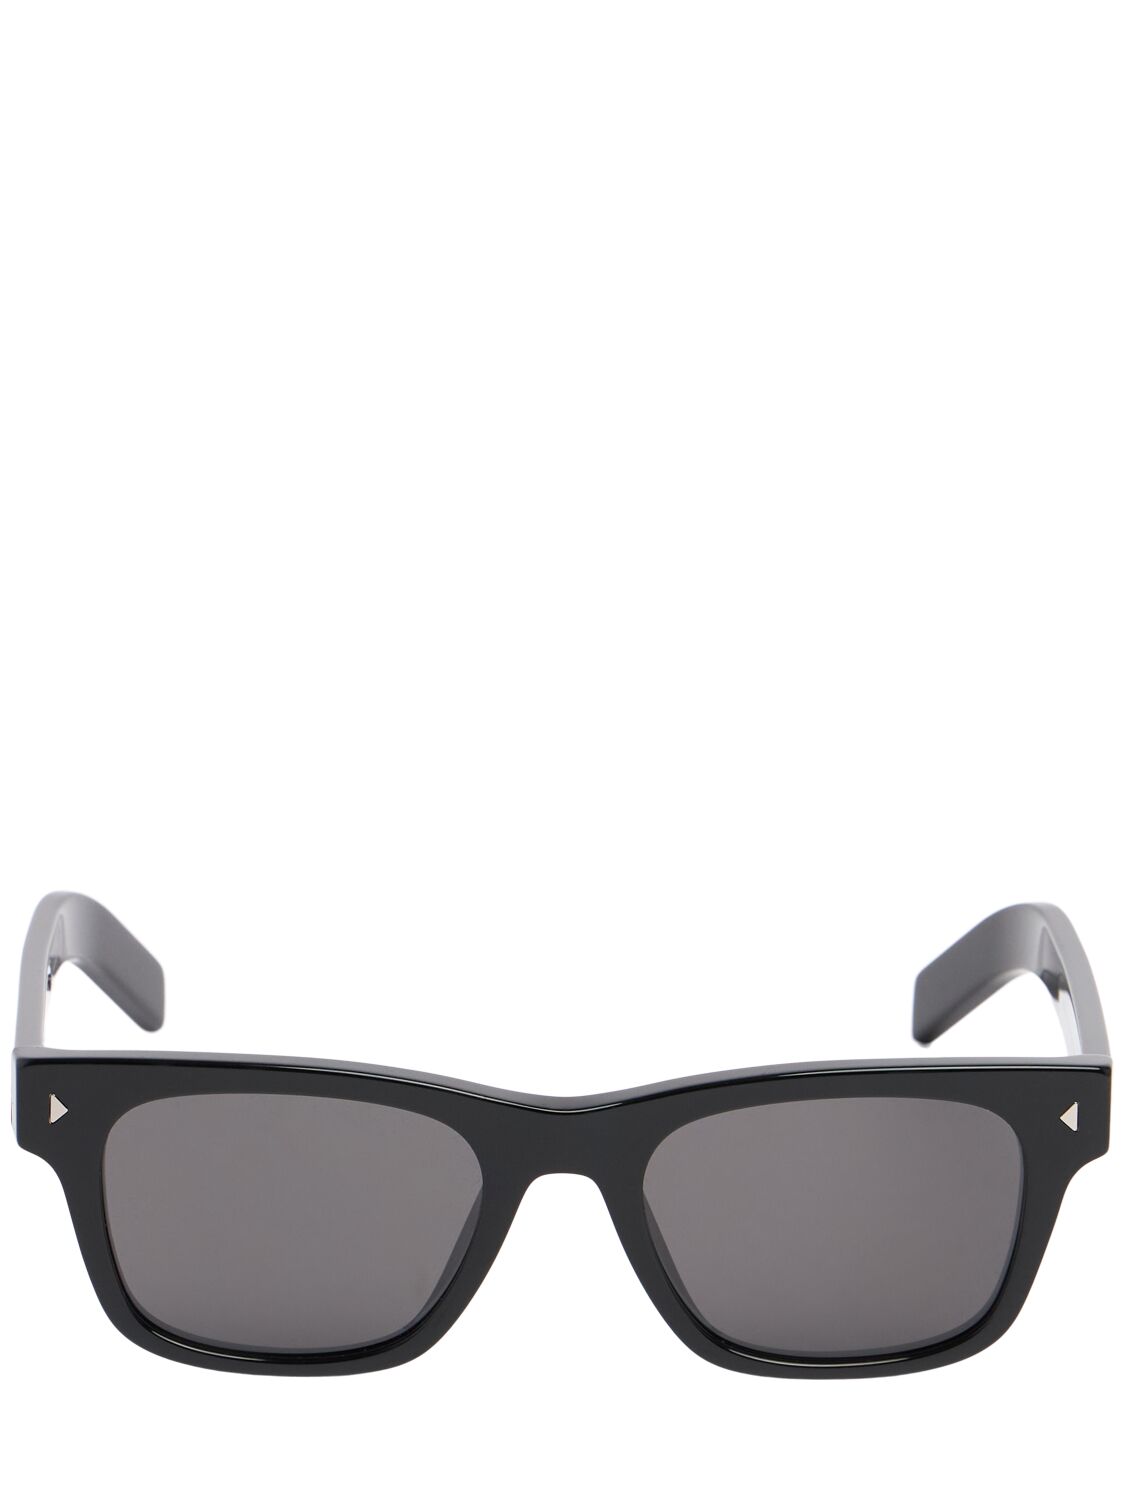 Prada Men's Acetate Square Sunglasses In Black